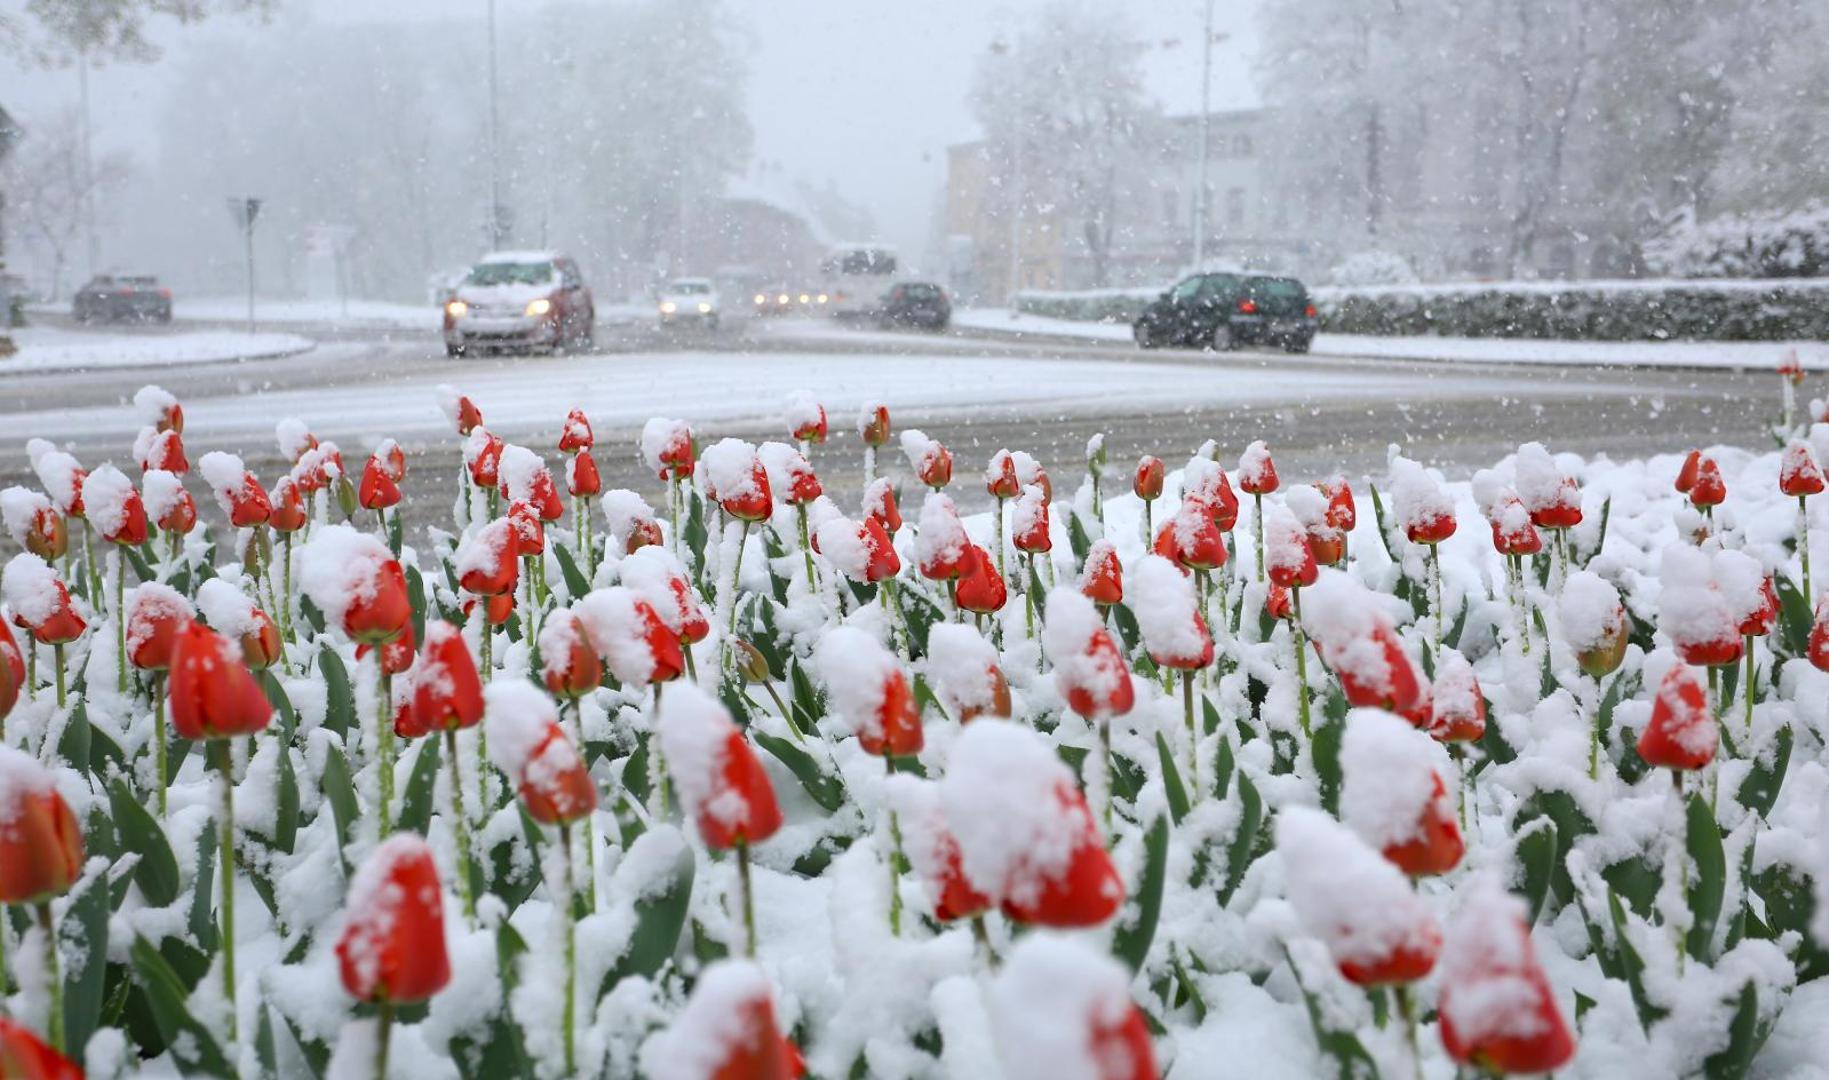 06.04.2021., Karlovac - Od ranih jutarnjih sati u Karlovcu pada gusti snijeg koji je brzo zabijelio prometnice i parkove. Photo: Kristina Stedul Fabac/PIXSELL